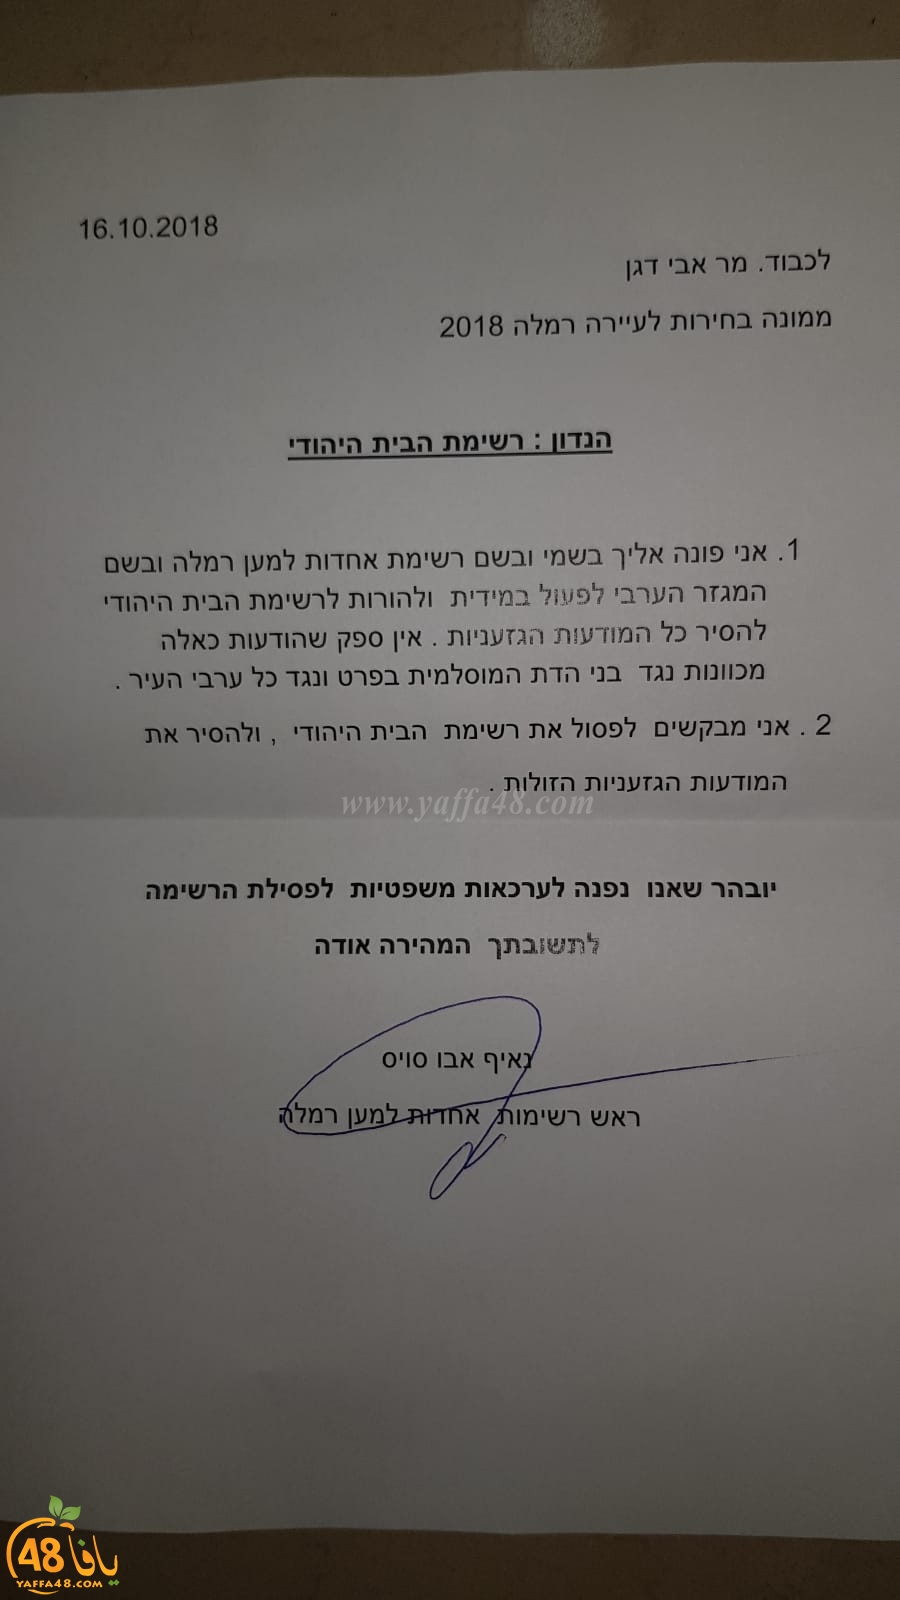 بعد النشر في يافا 48 - قائمة الوحدة تتوجه بطلب لشطب قائمة الحزب اليهودي بسبب العنصرية